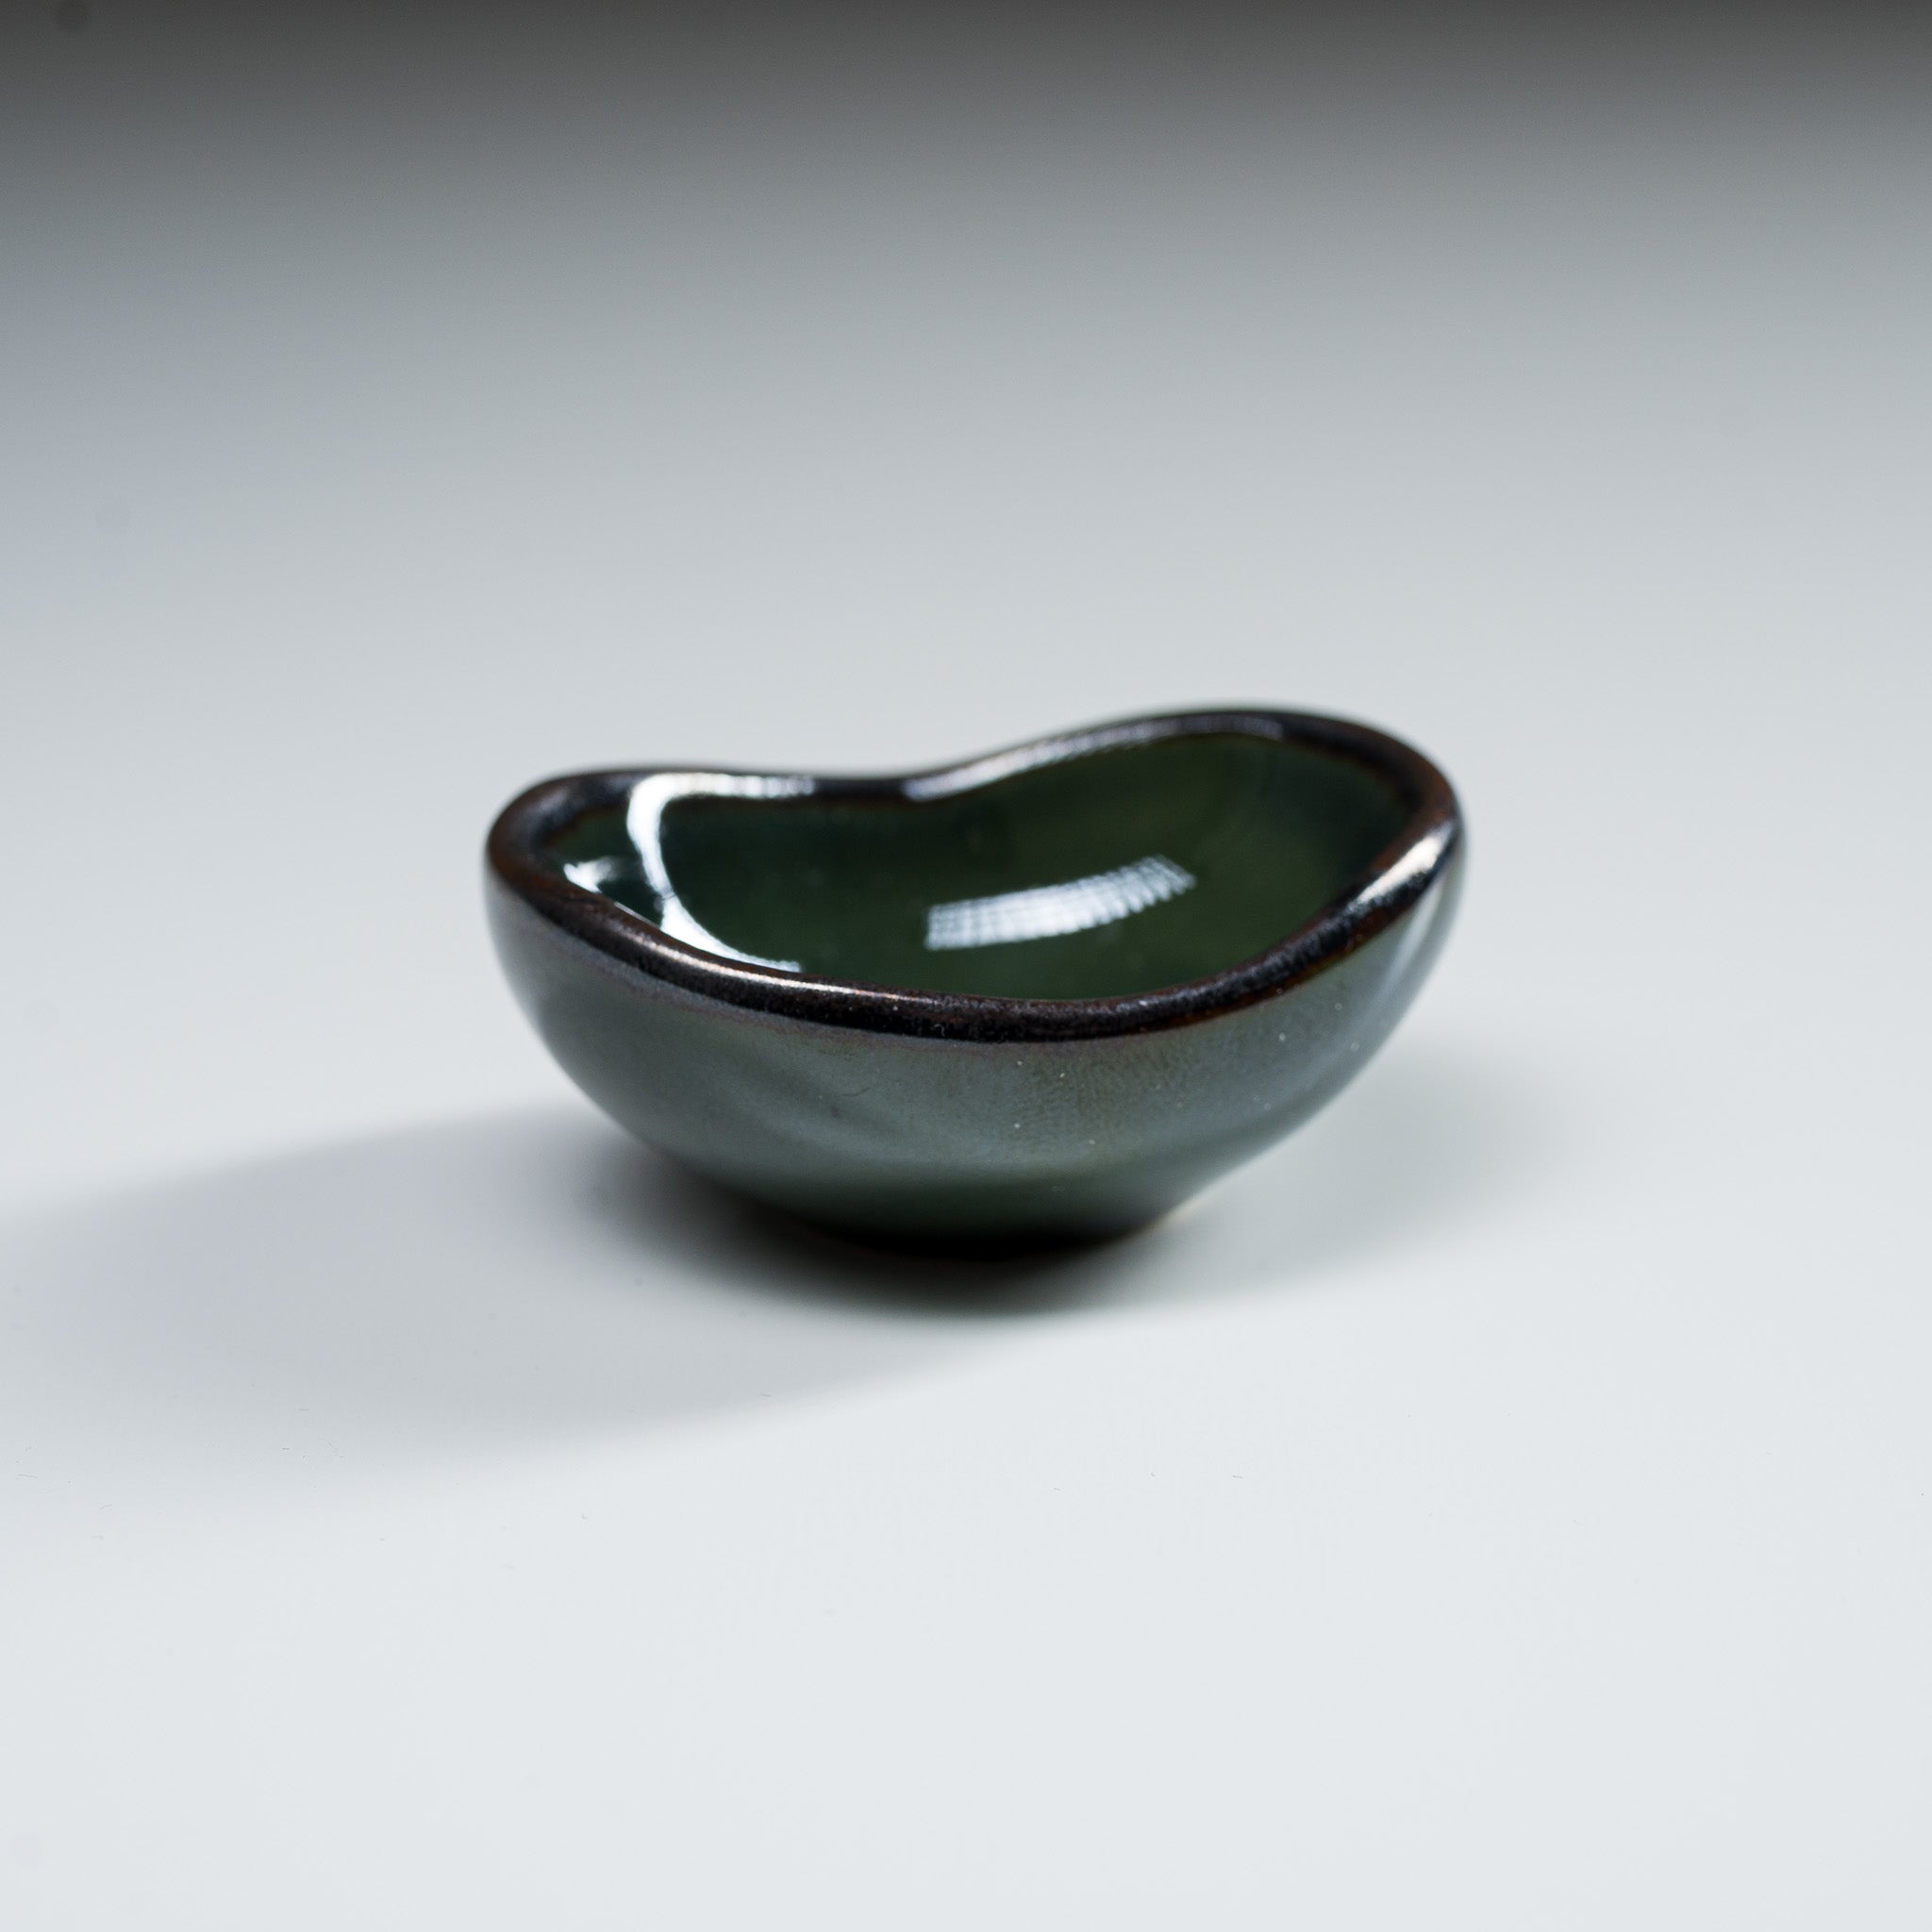 Mino ware Mini Bean Bowl, Sauce Dish - 6 cm / 美濃焼き ミニ小鉢